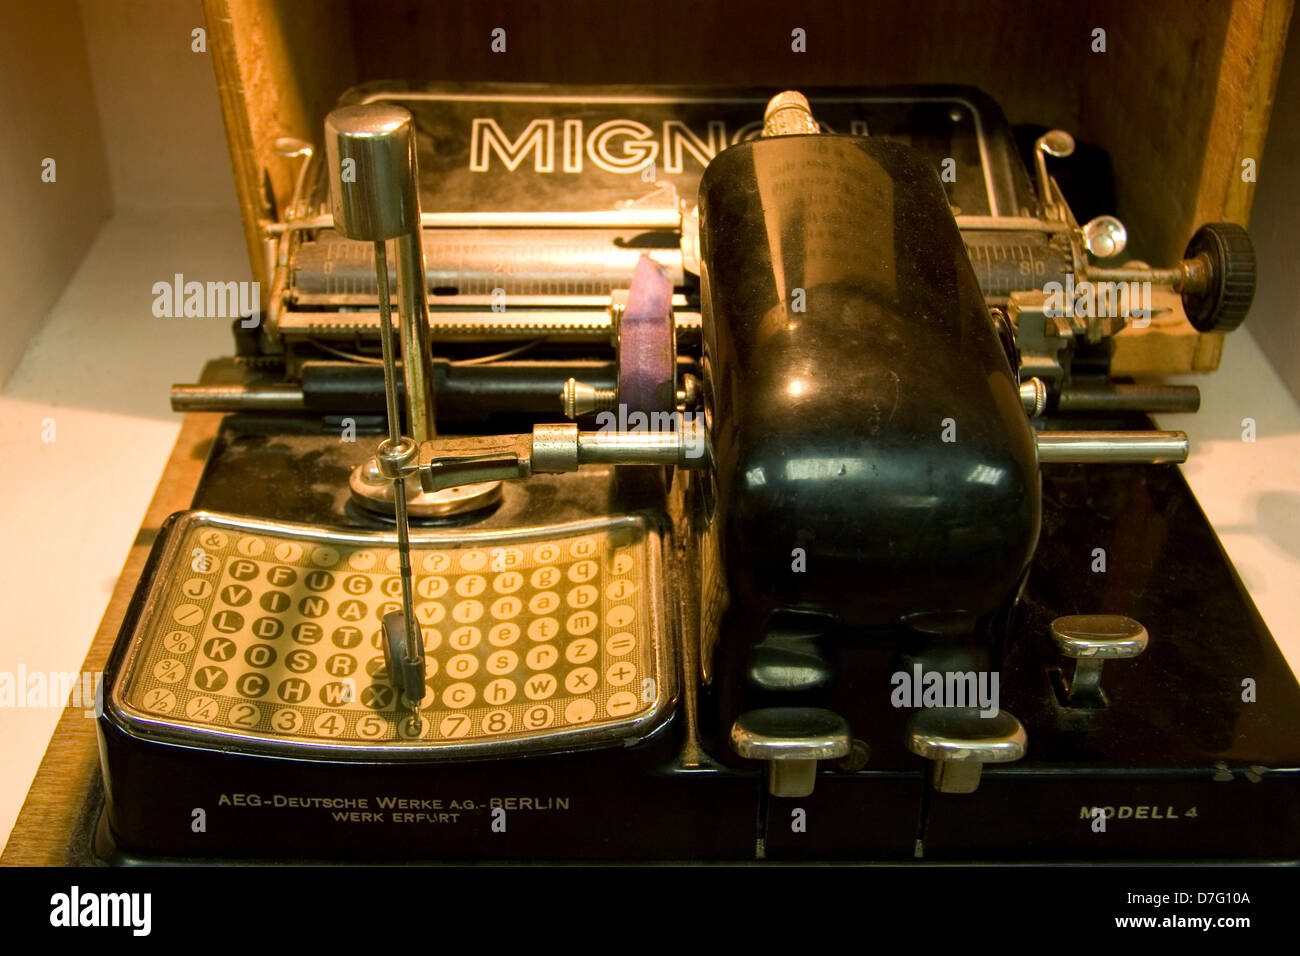 Mignon Schreibmaschine Modell 4 von AEG in Berlin gemacht Stockfoto